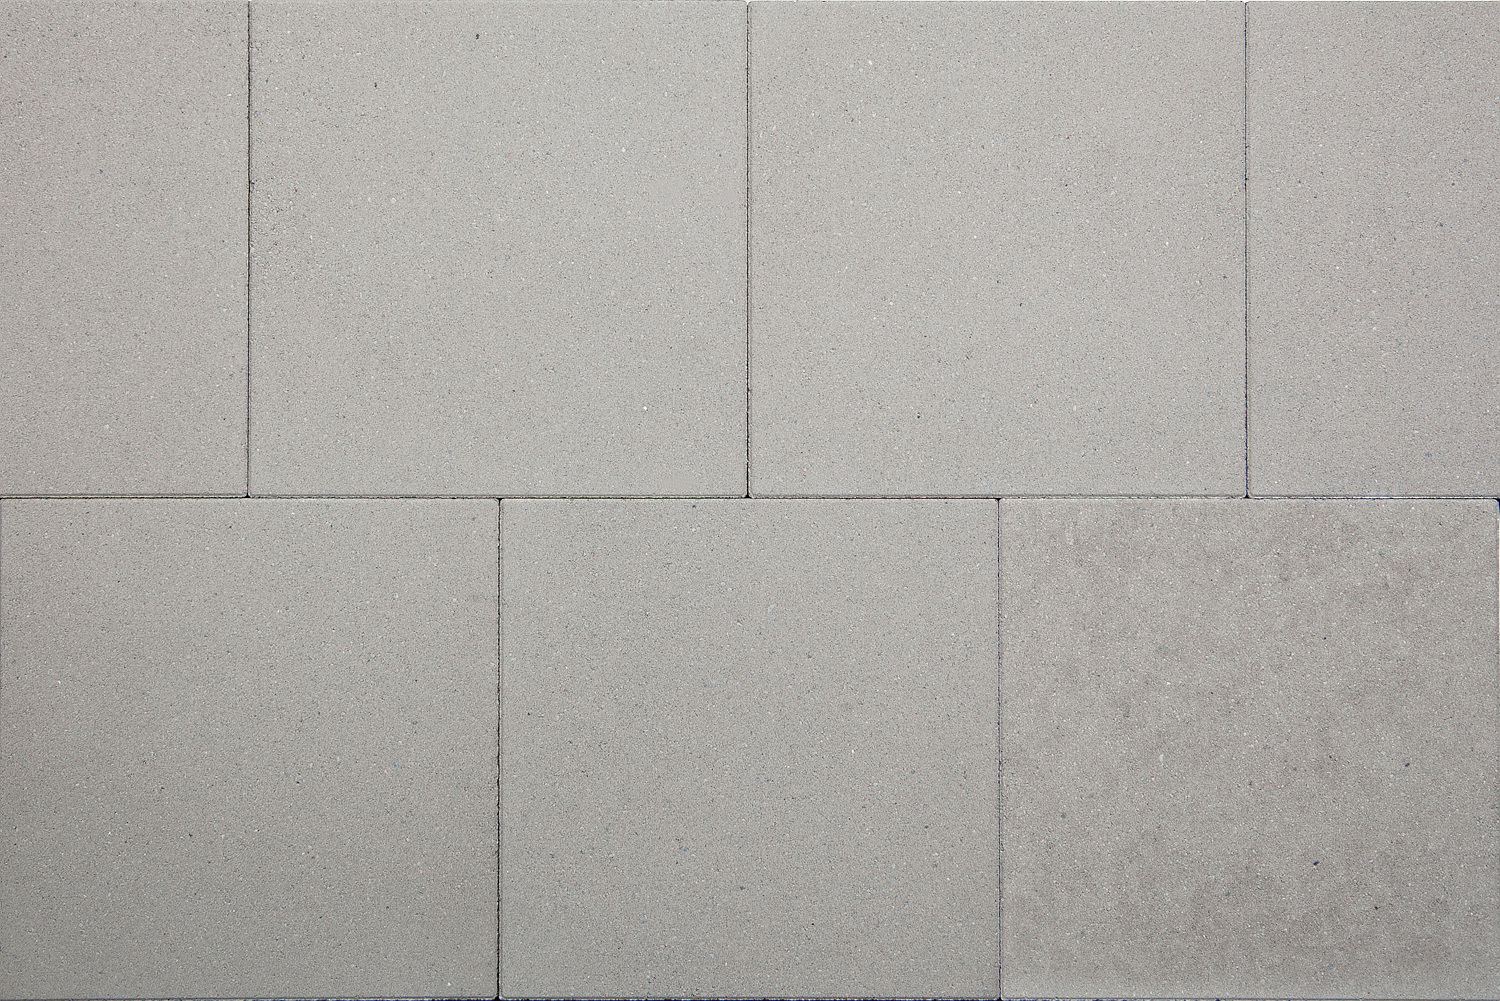 Beton-Gehwegplatte, 30x30x5cm, grau, zweischichtig mit Basaltvorsatz